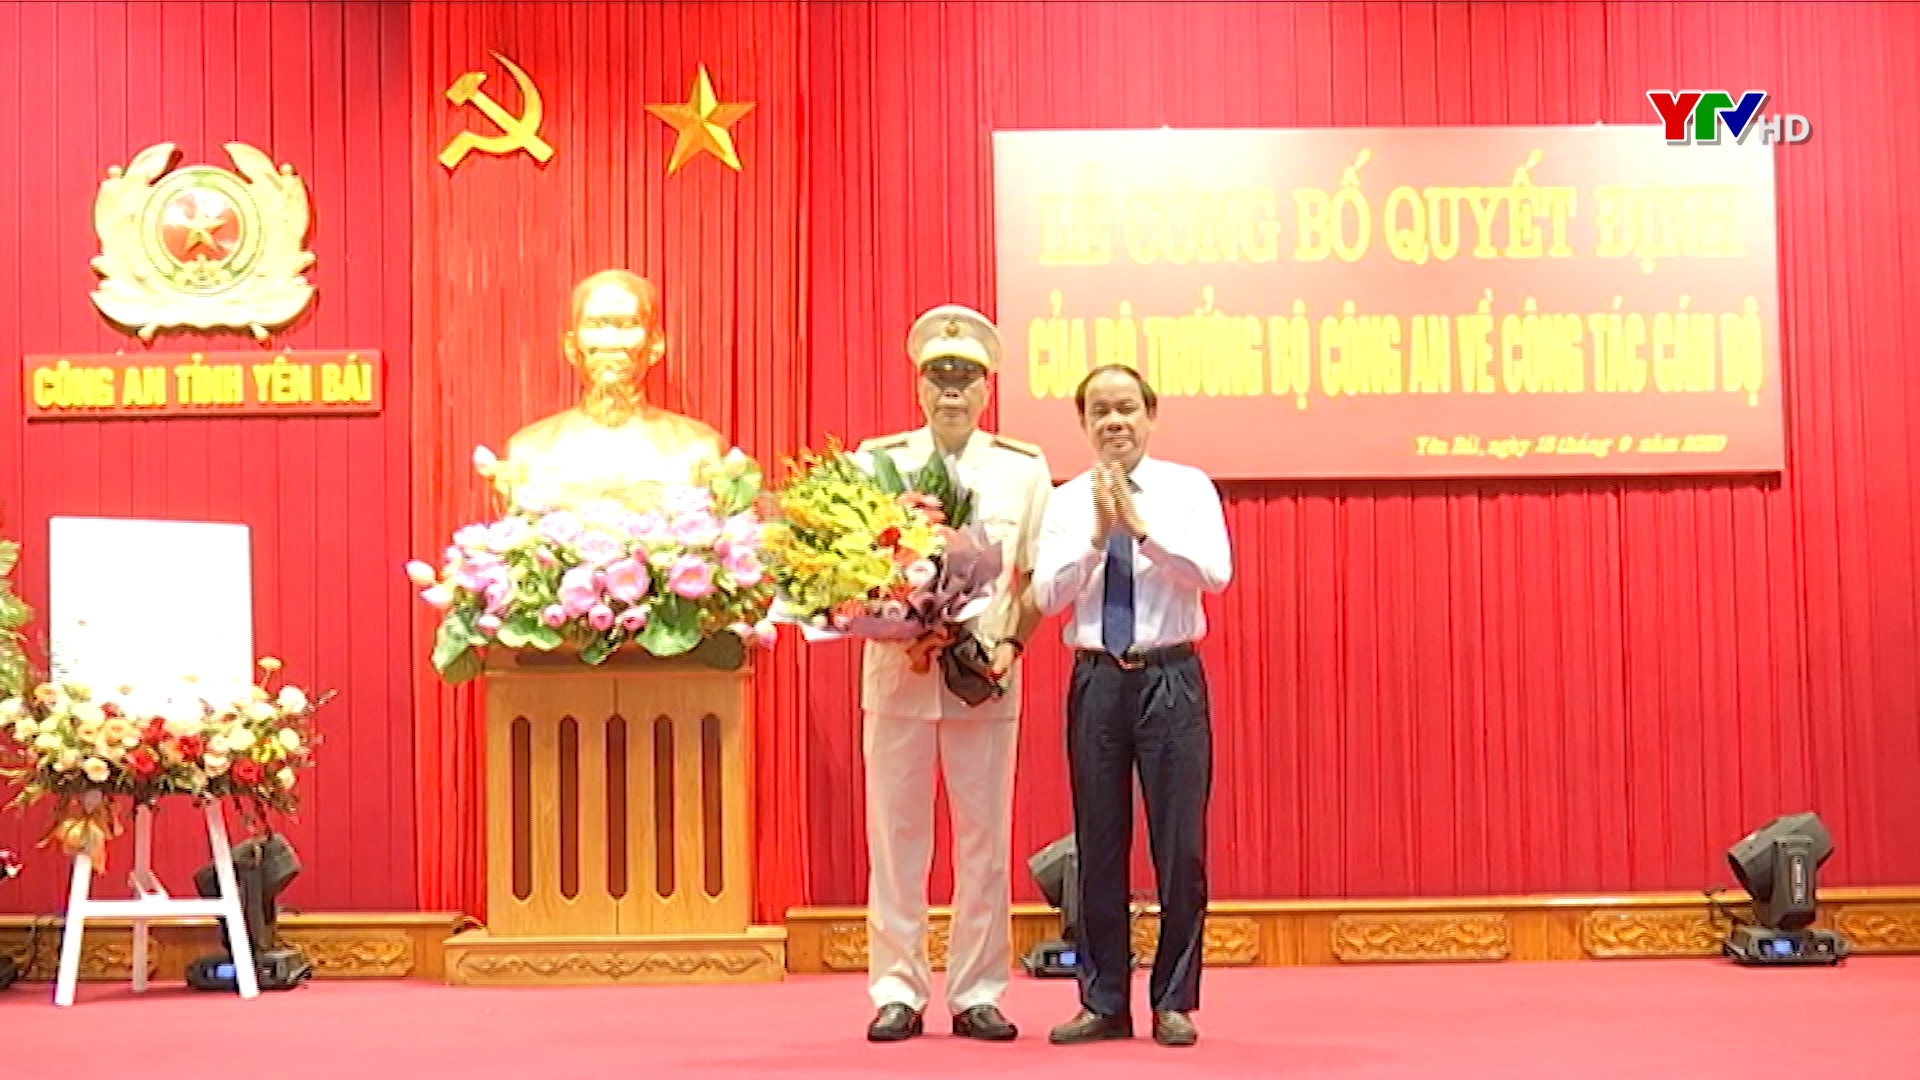 Đại tá Đặng Xuân Quỳnh giữ chức Phó Giám đốc Công an tỉnh Yên Bái